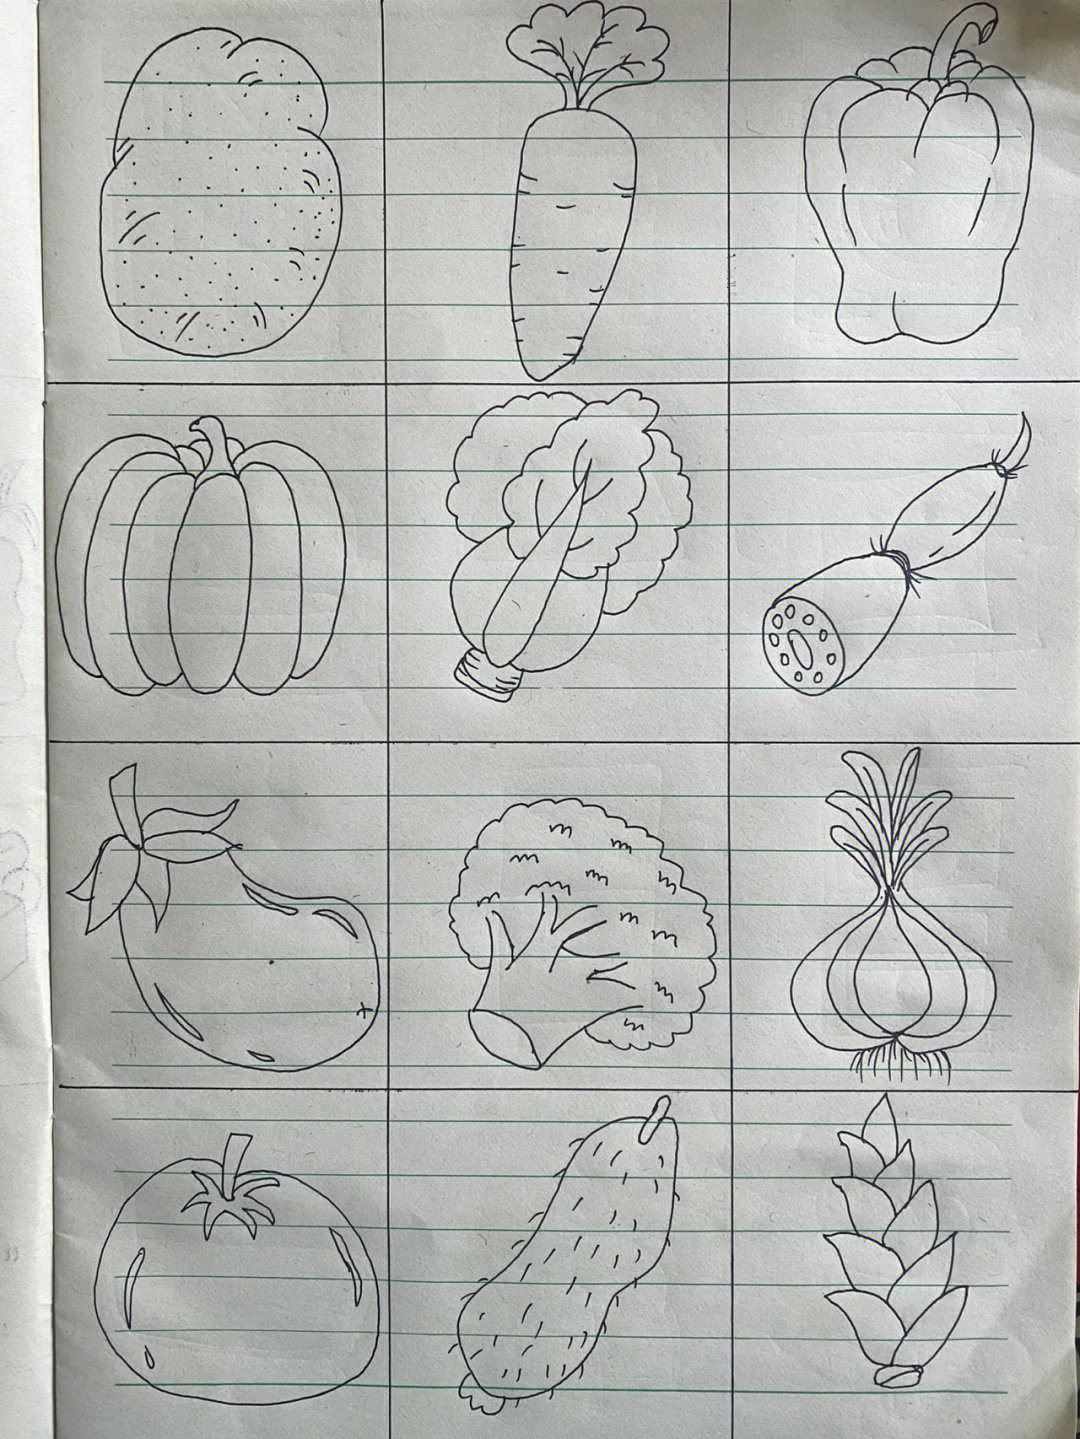 所有的蔬菜怎么画图片